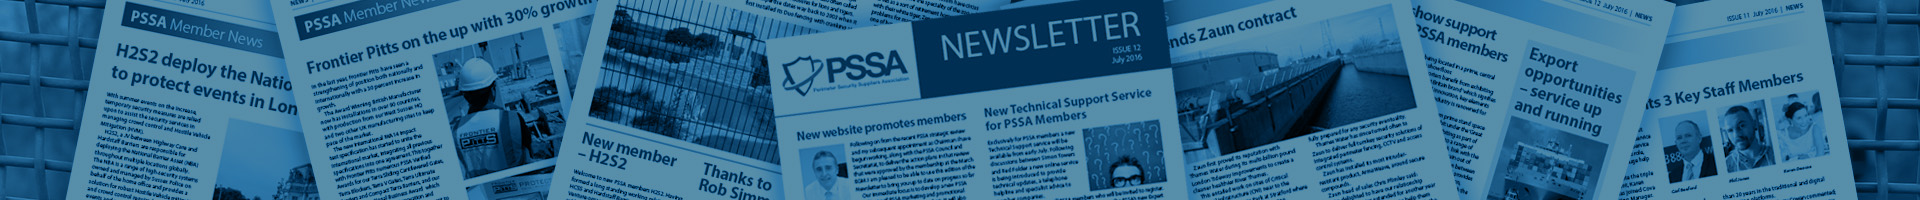 PSSA Newsletter Header Image